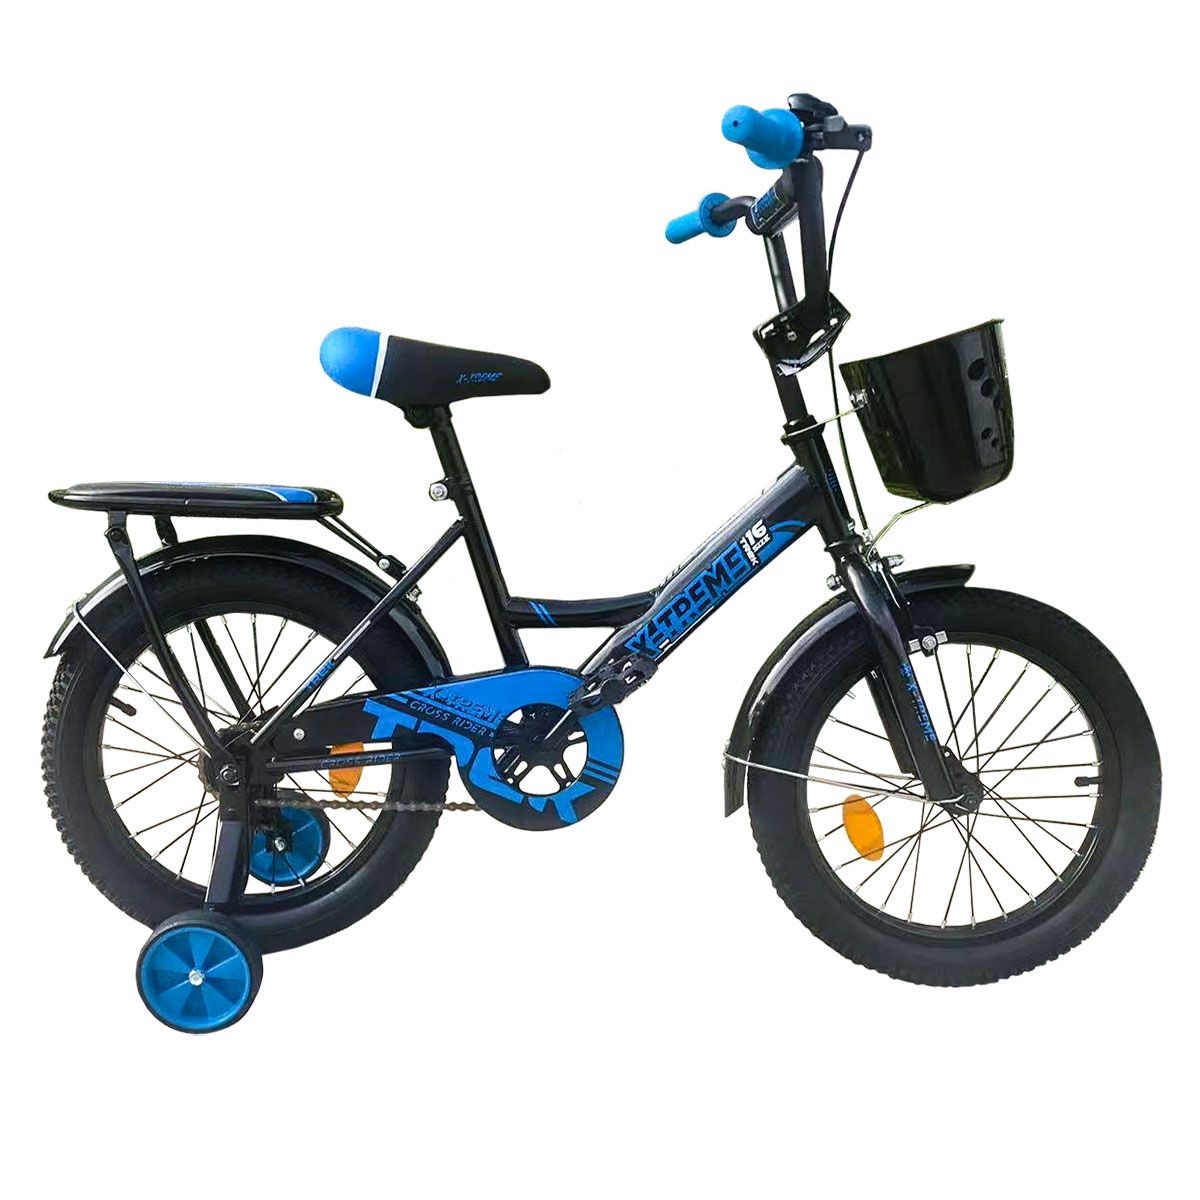 Дитячий велосипед X-Treme TREK 16" чорно-синій